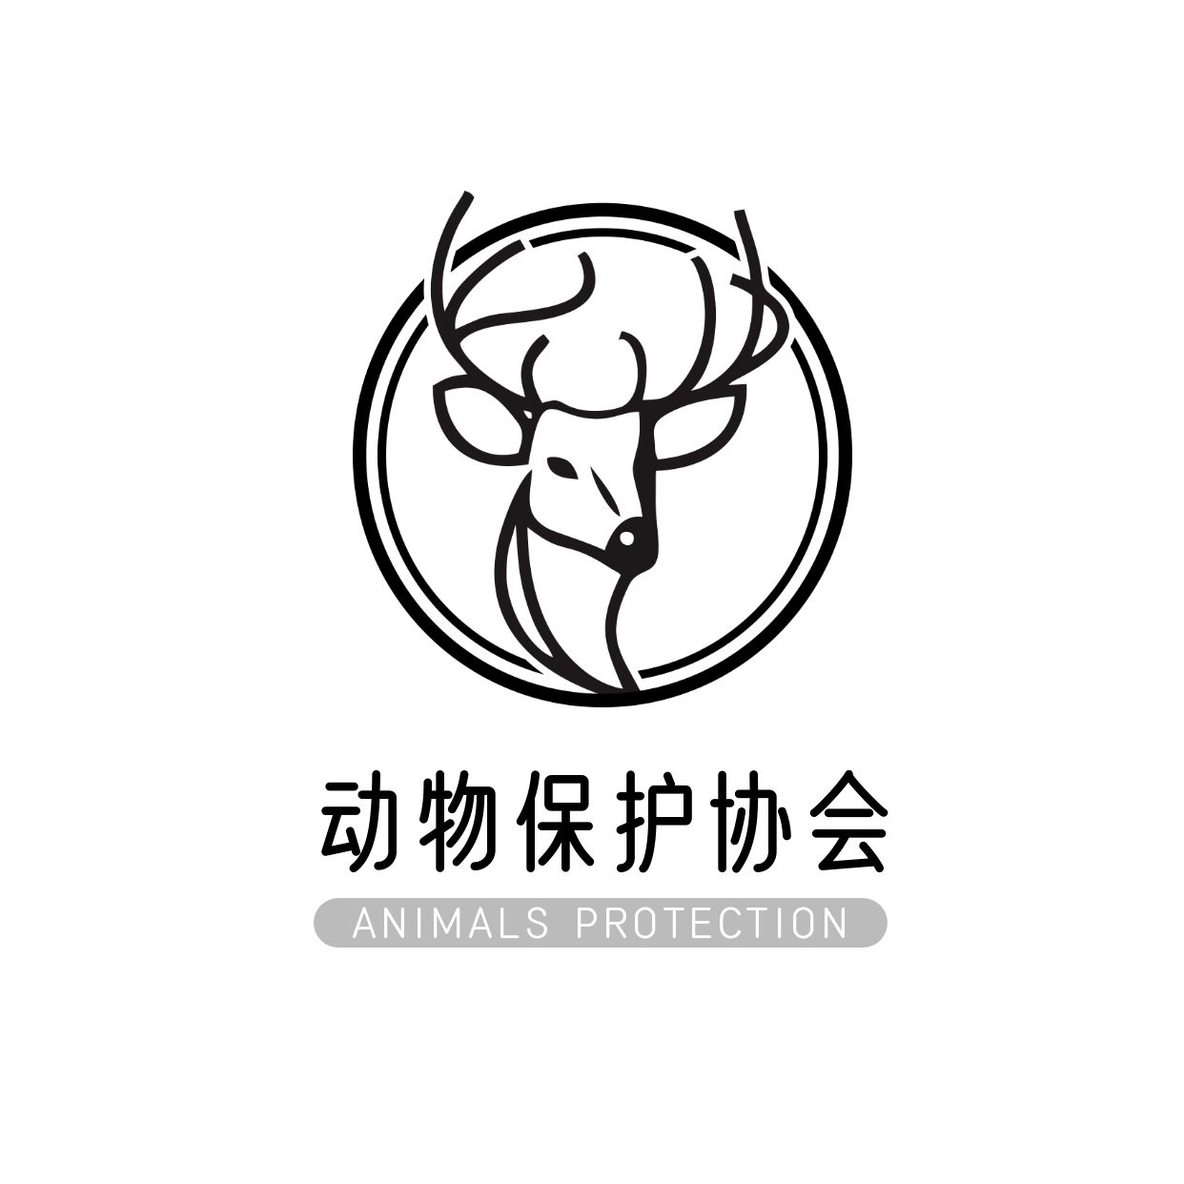 公益环保动物保护logo 2